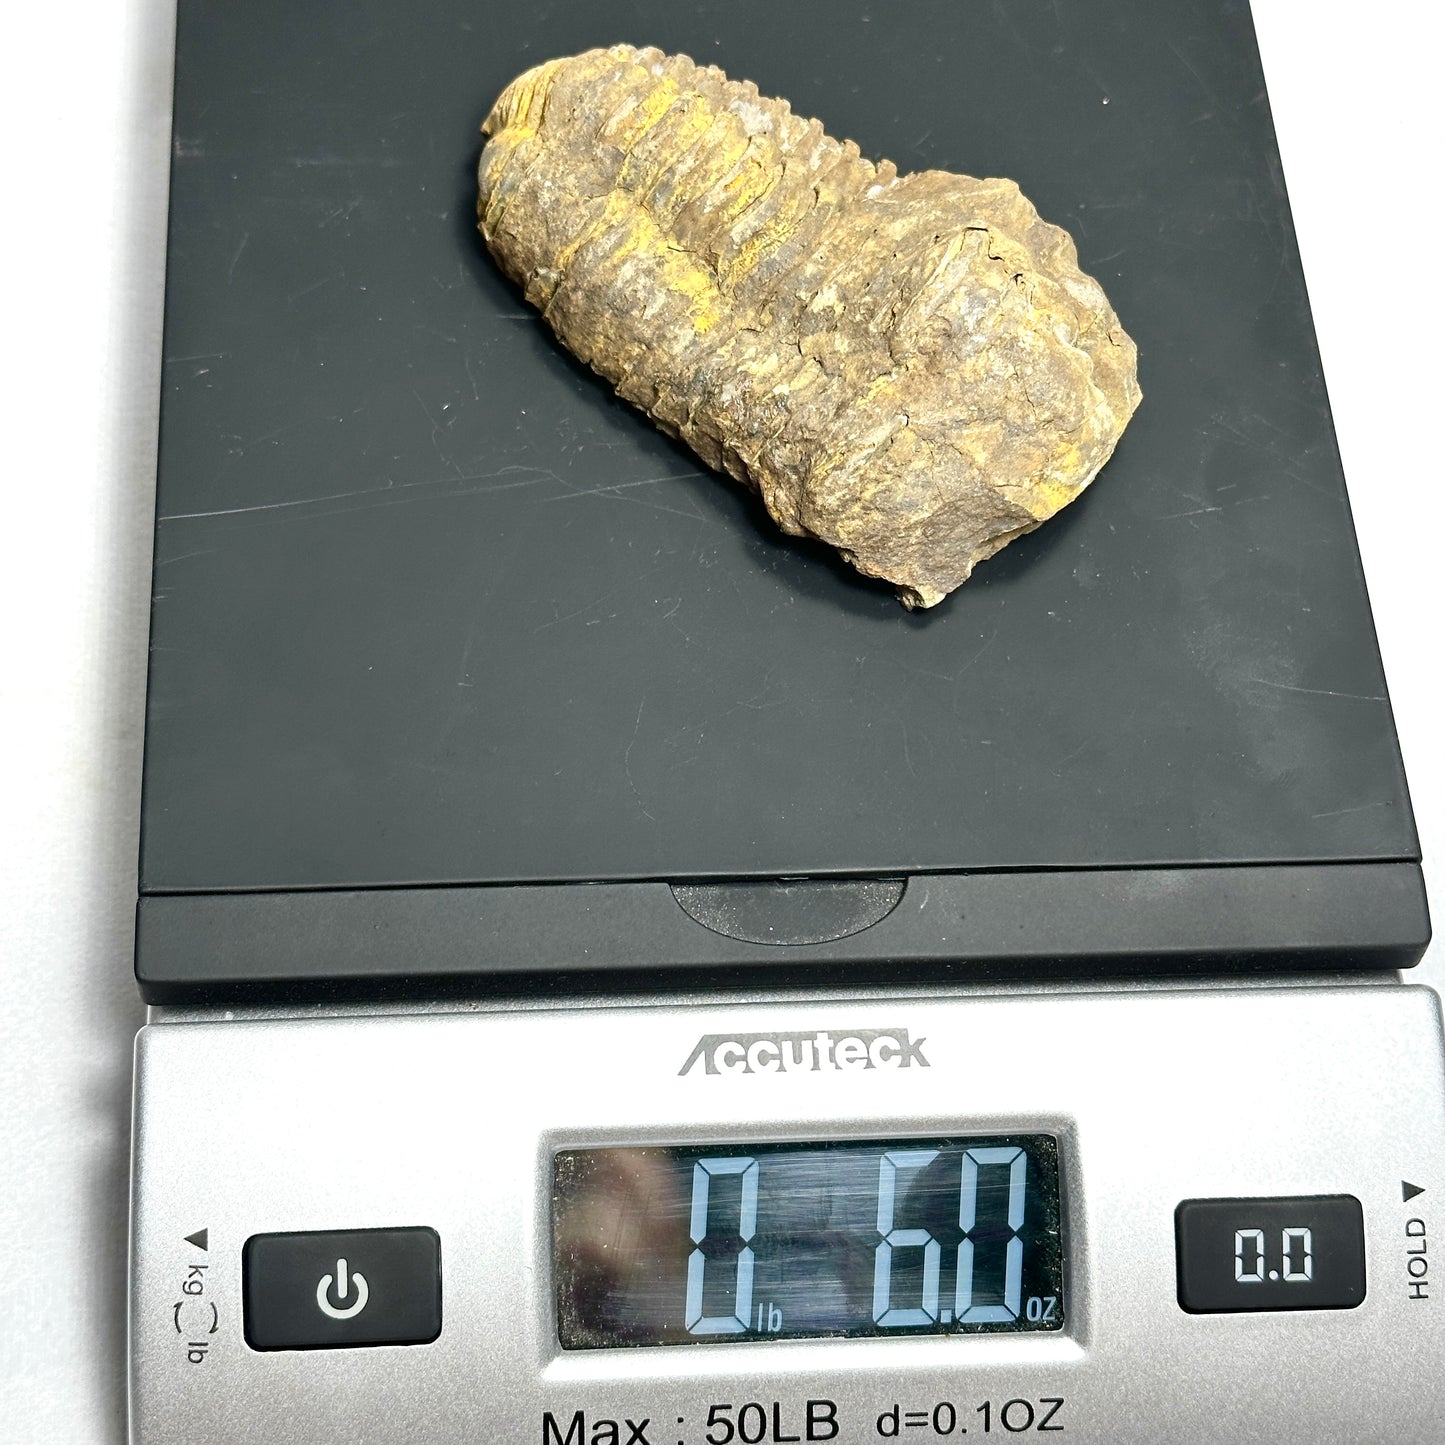 Flexicalymene Trilobite 3.8"